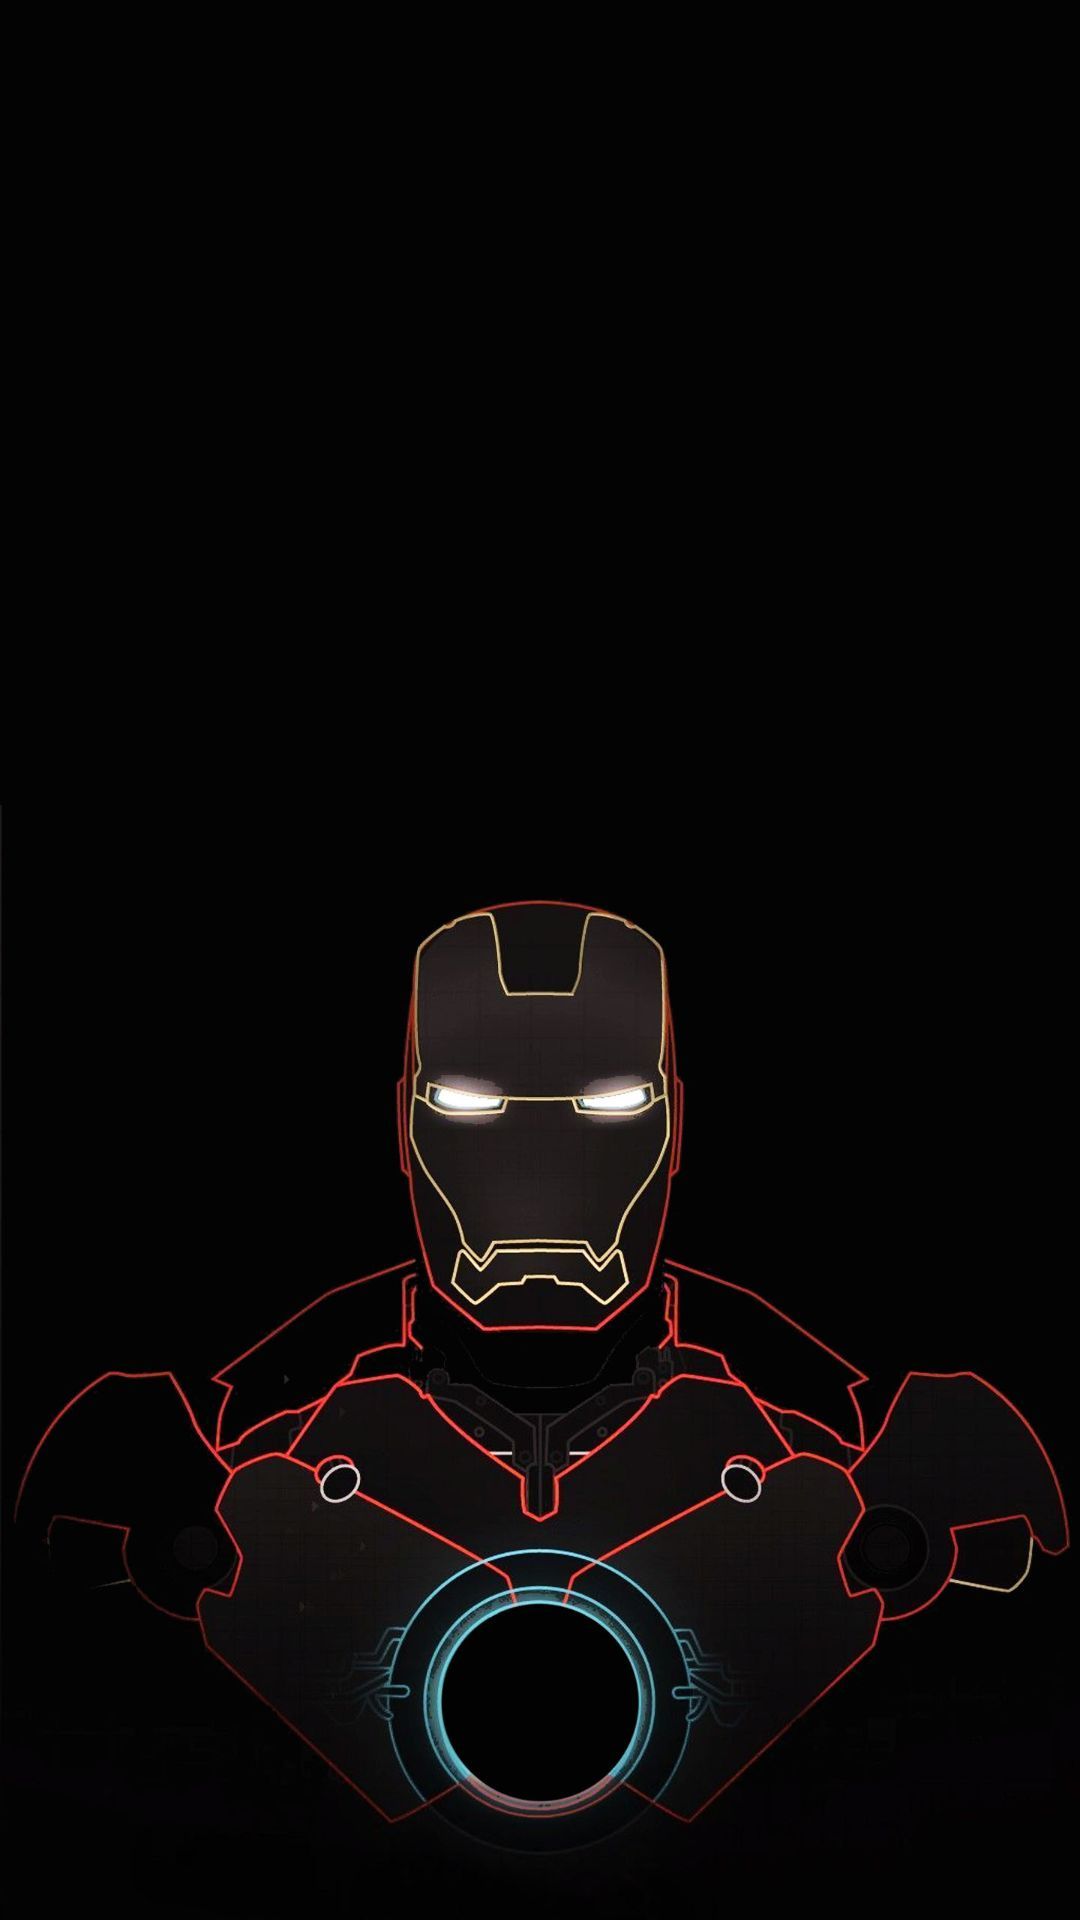  Iron Man Hintergrundbild 1080x1920. Cool Iron Man iPhone Wallpaper Cool Iron Man iPhone Wallpaper